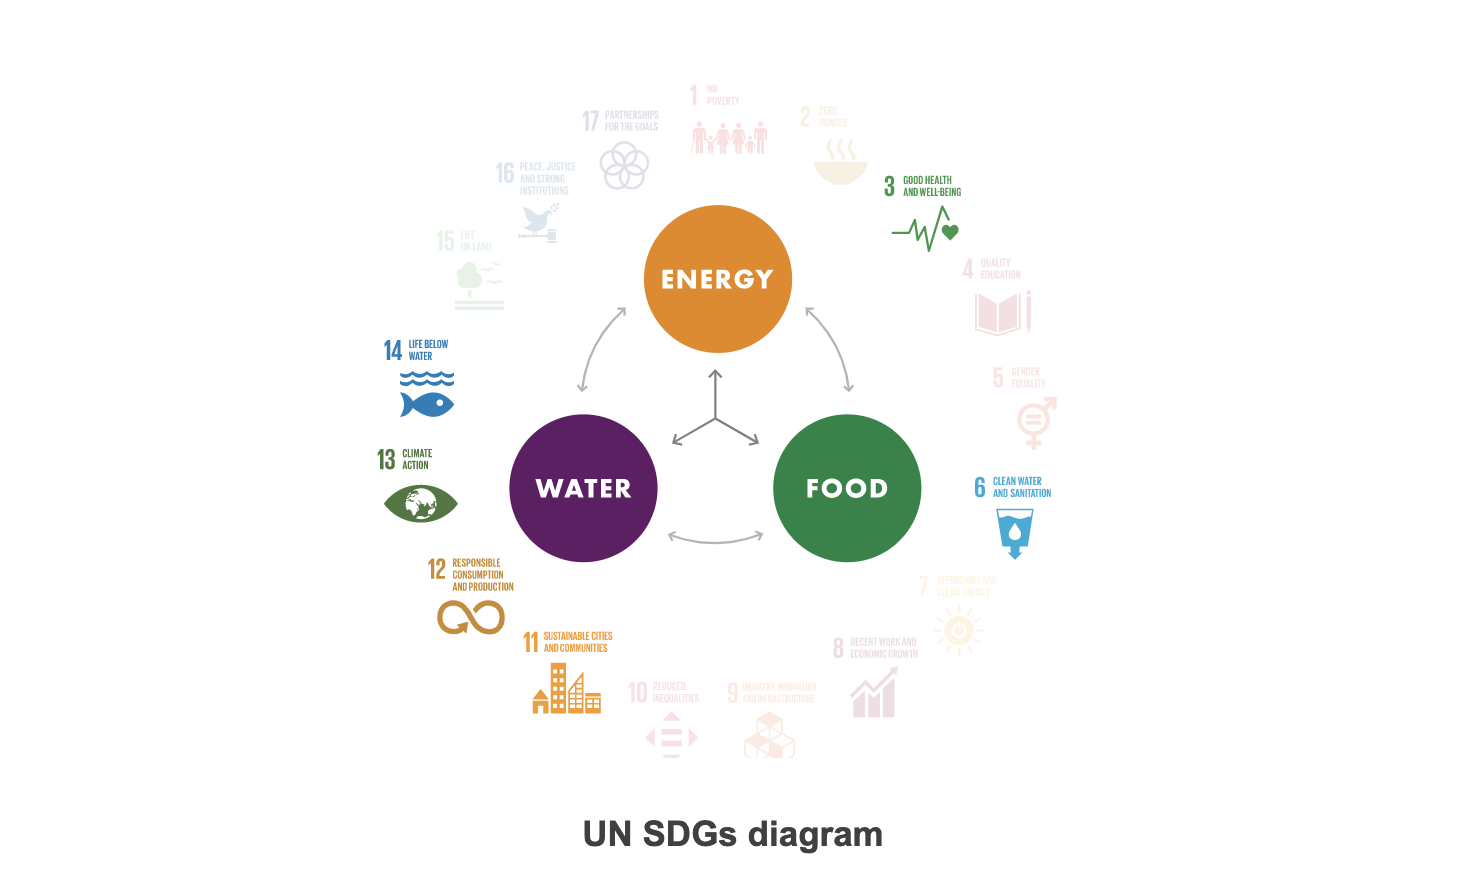 UN SDG diagram Philippines